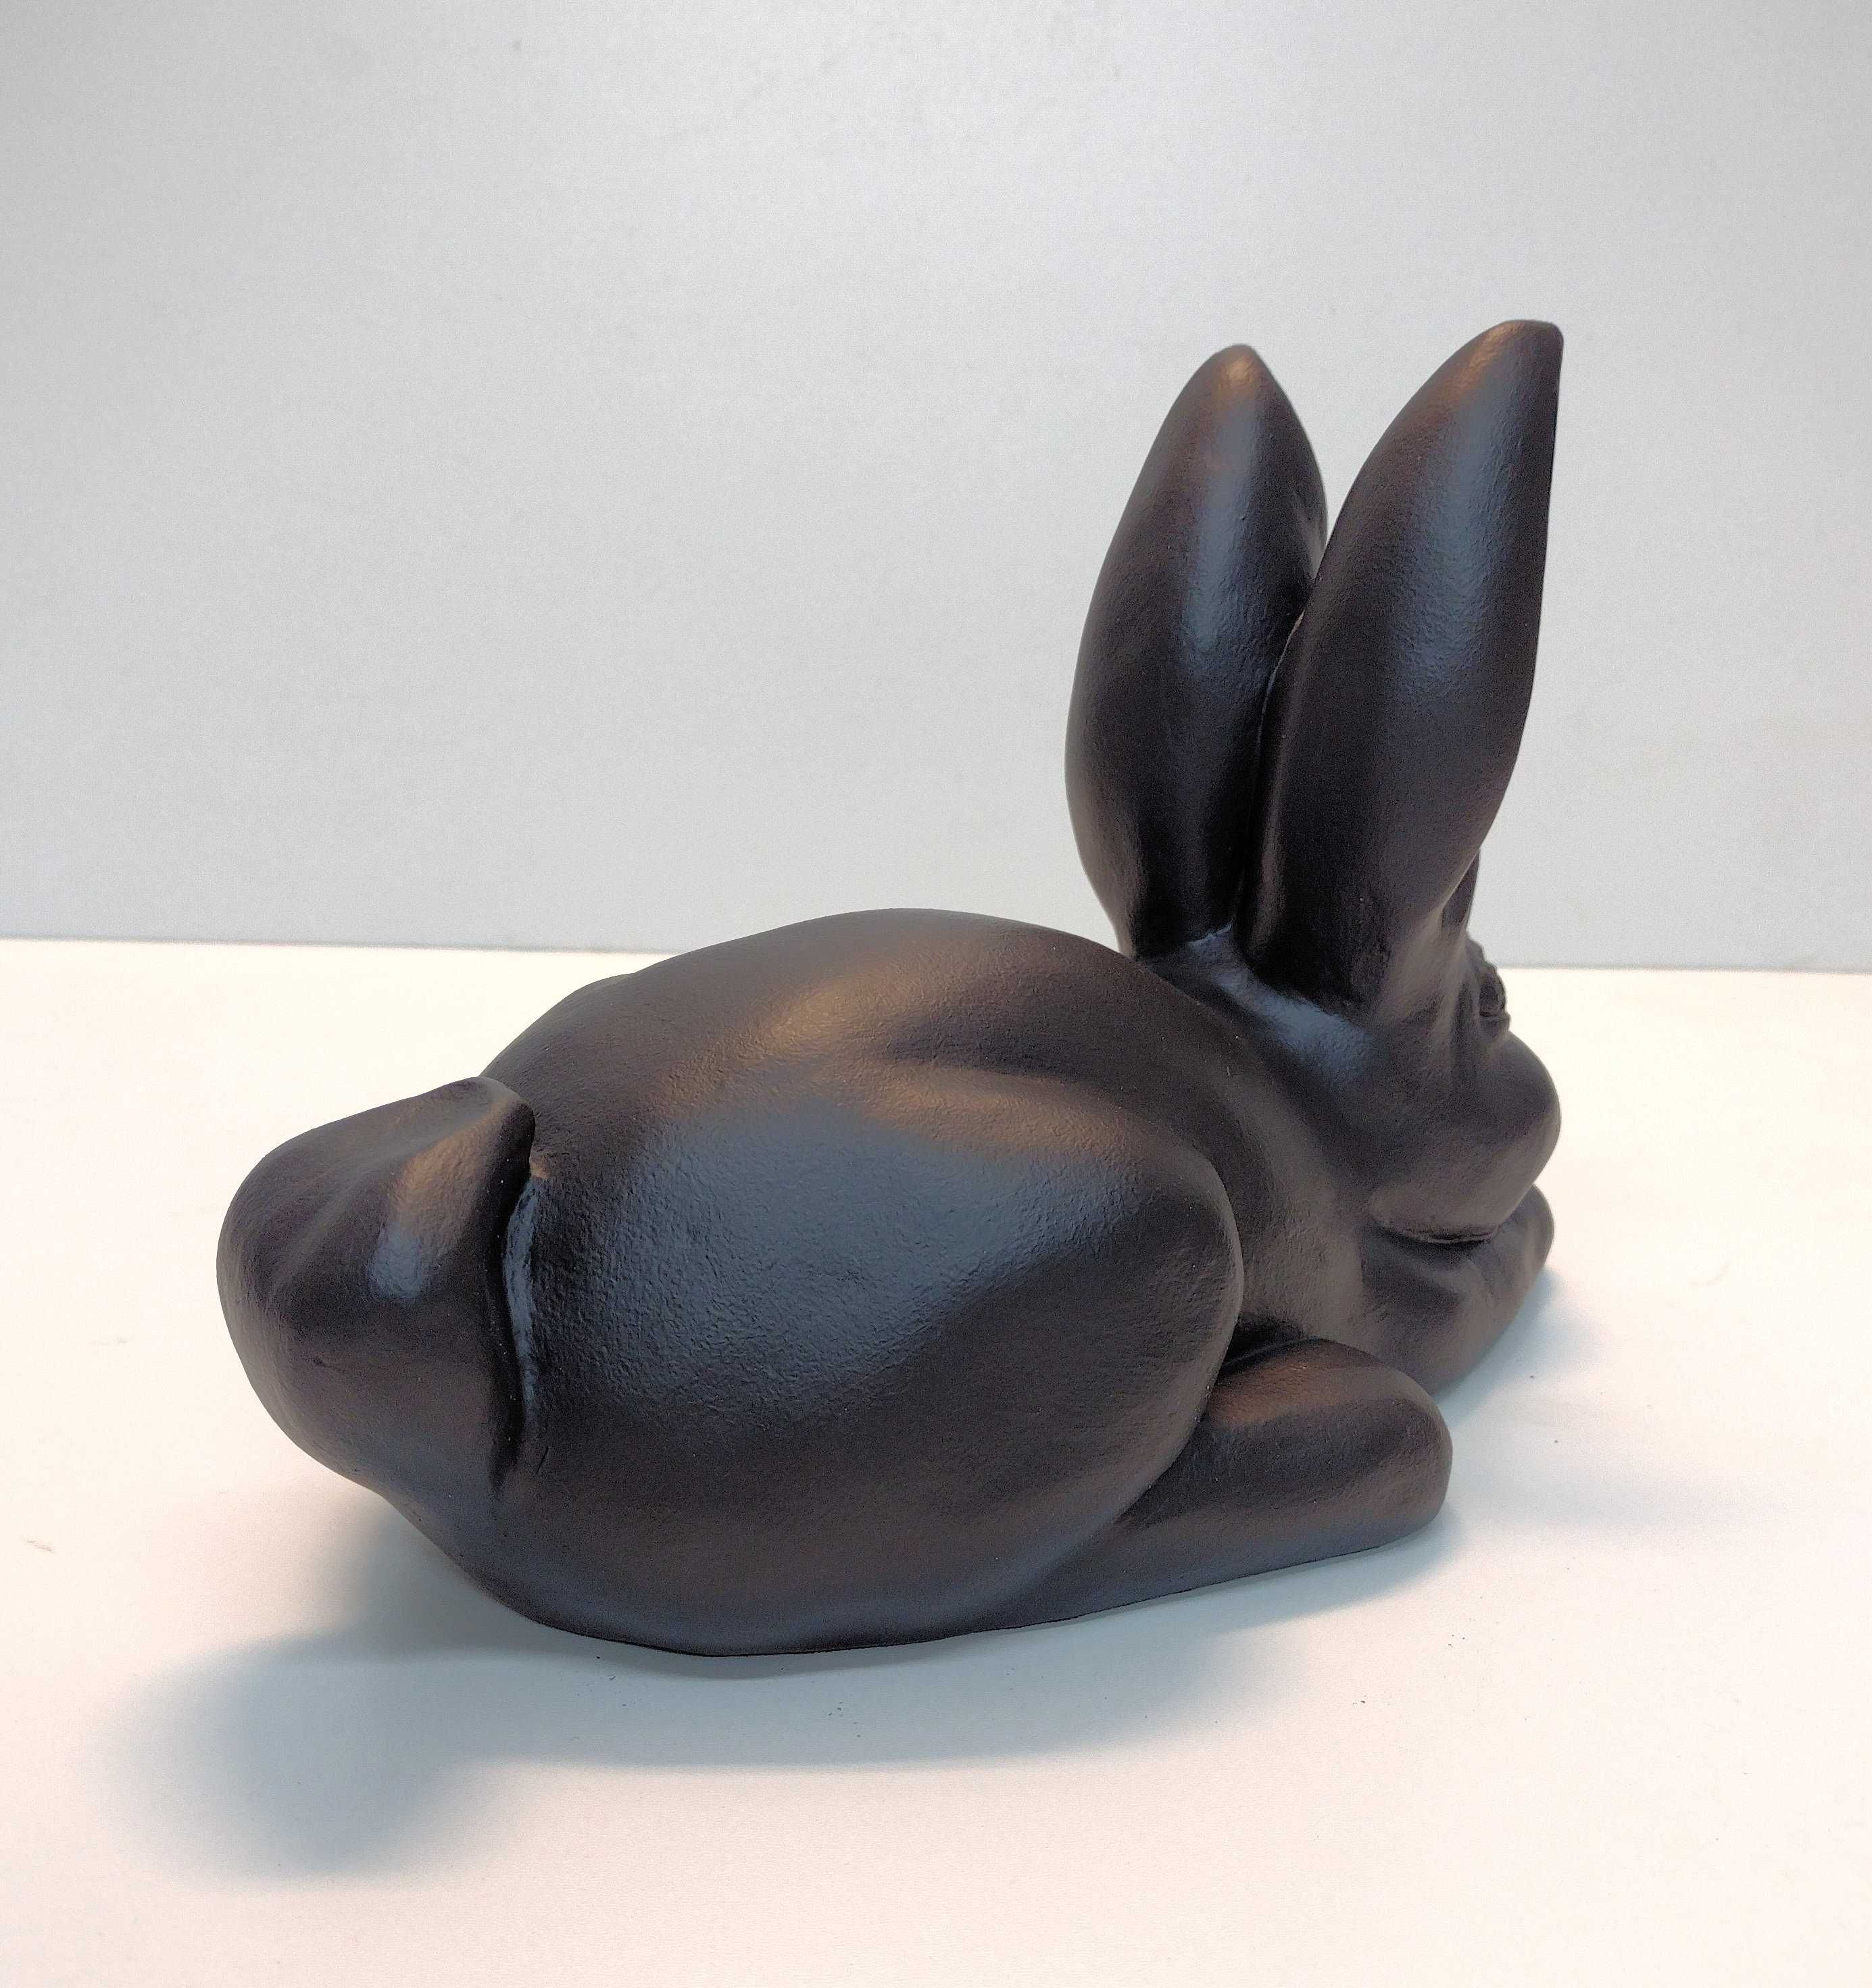 Duży Zając WIELKANOCNY 19 cm figura królik czarny